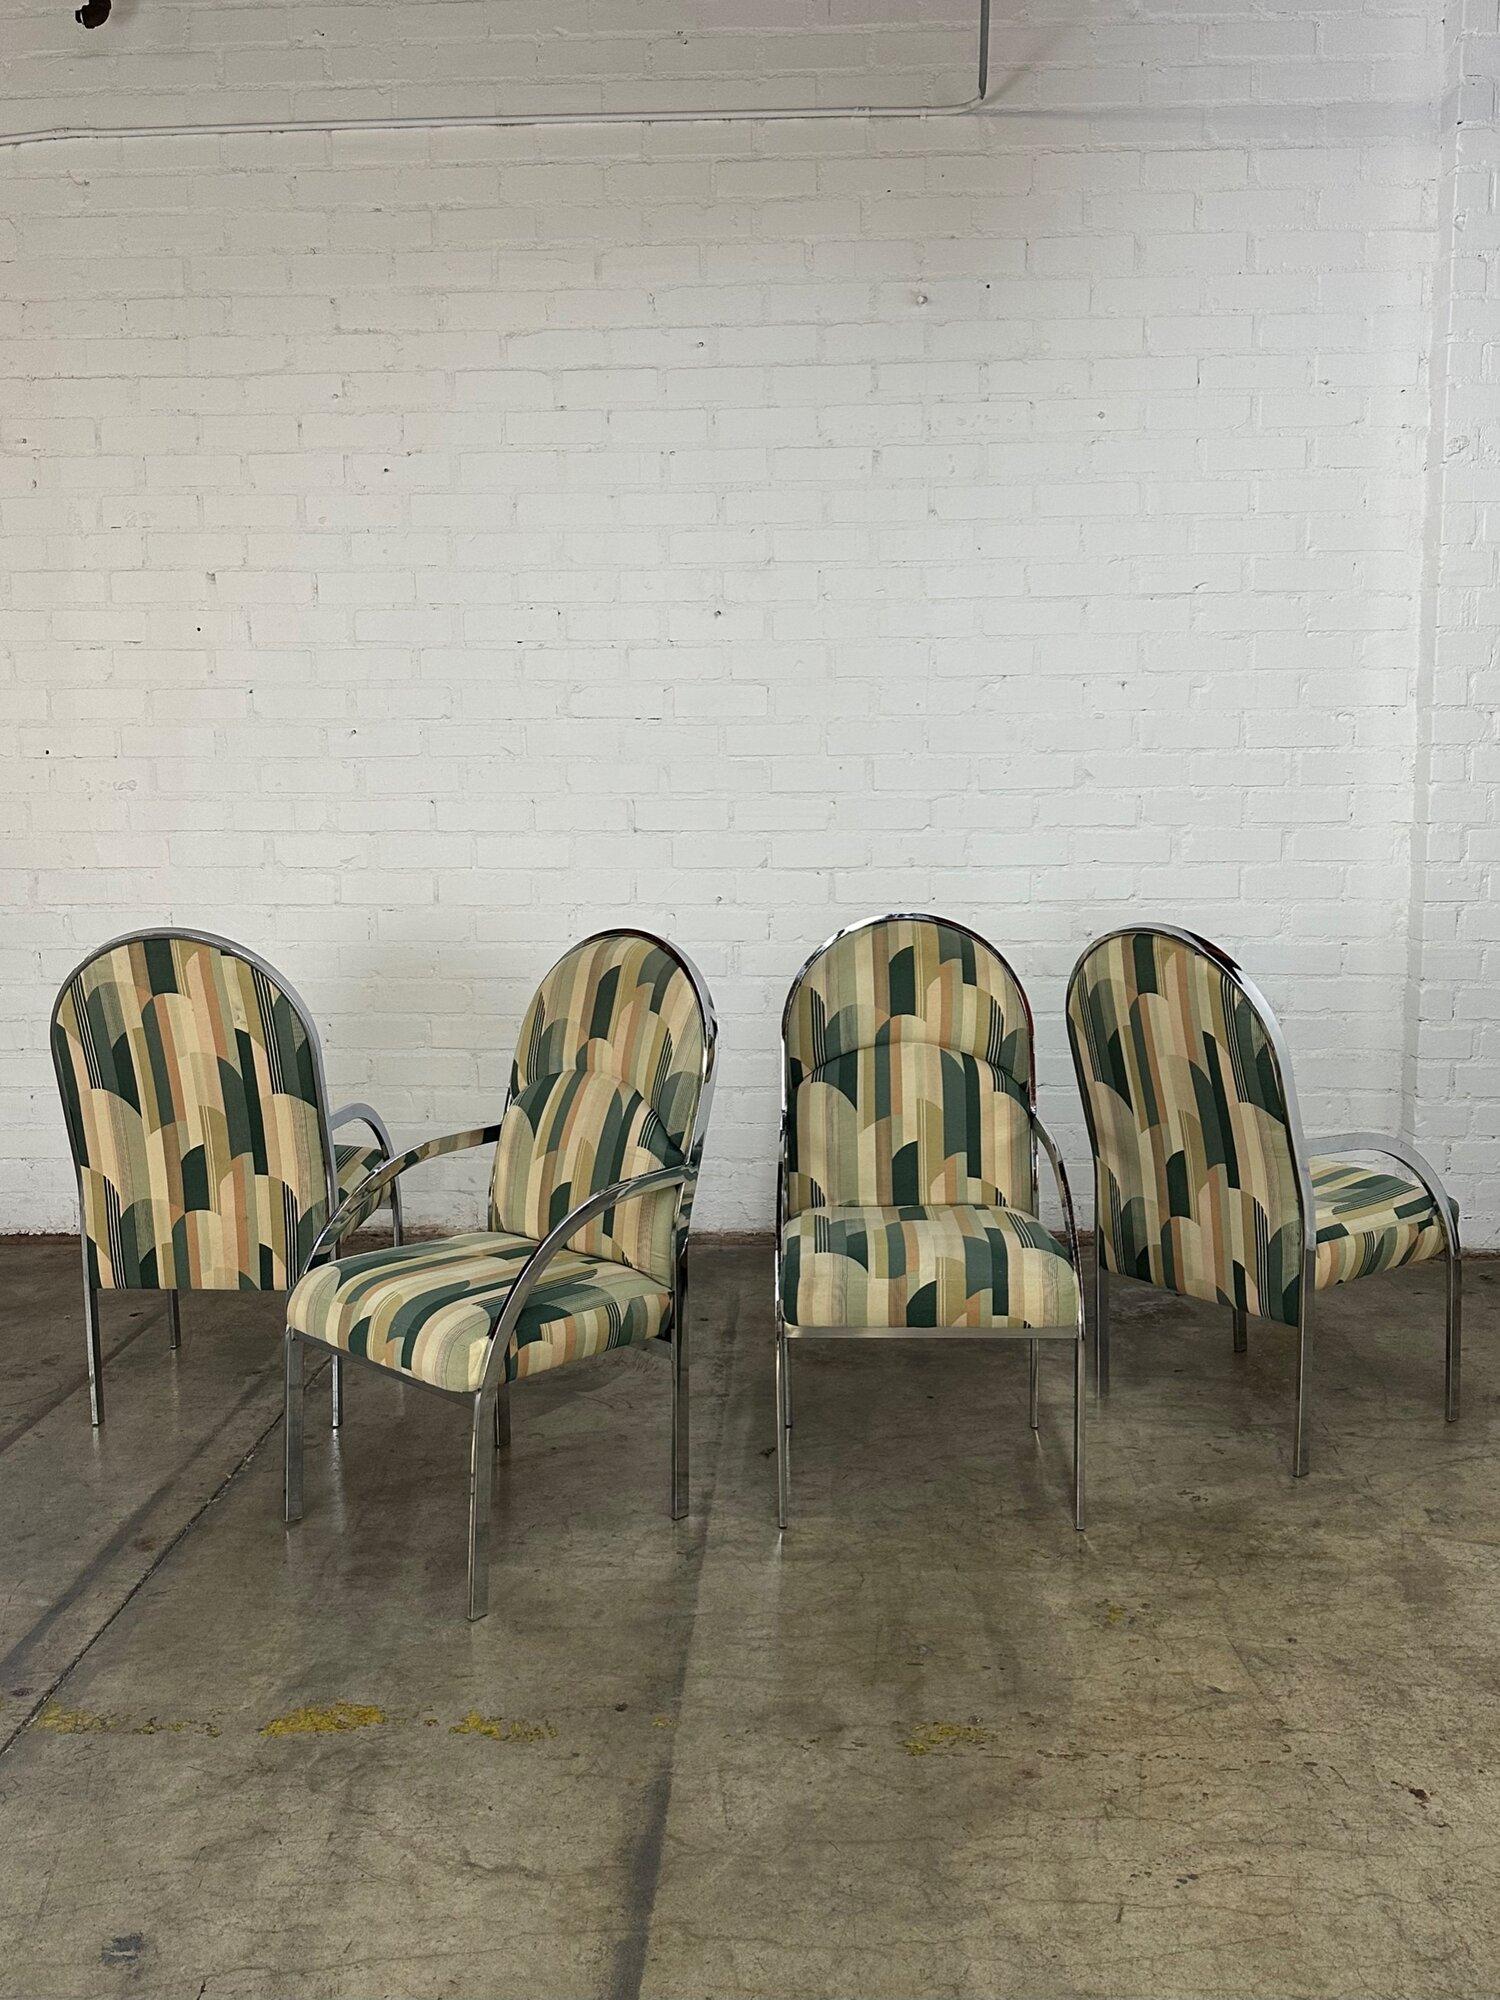 W22 D22 H40 SW19 SD17 SH18 AH25

Satz von 4 verchromten Esszimmerstühlen, in gutem Vintage-Zustand. Die Stühle sind strukturell einwandfrei und haben keine Risse oder Brüche. Die Polsterung weist ein Art-Deco-ähnliches Muster in Grün- und Lachstönen